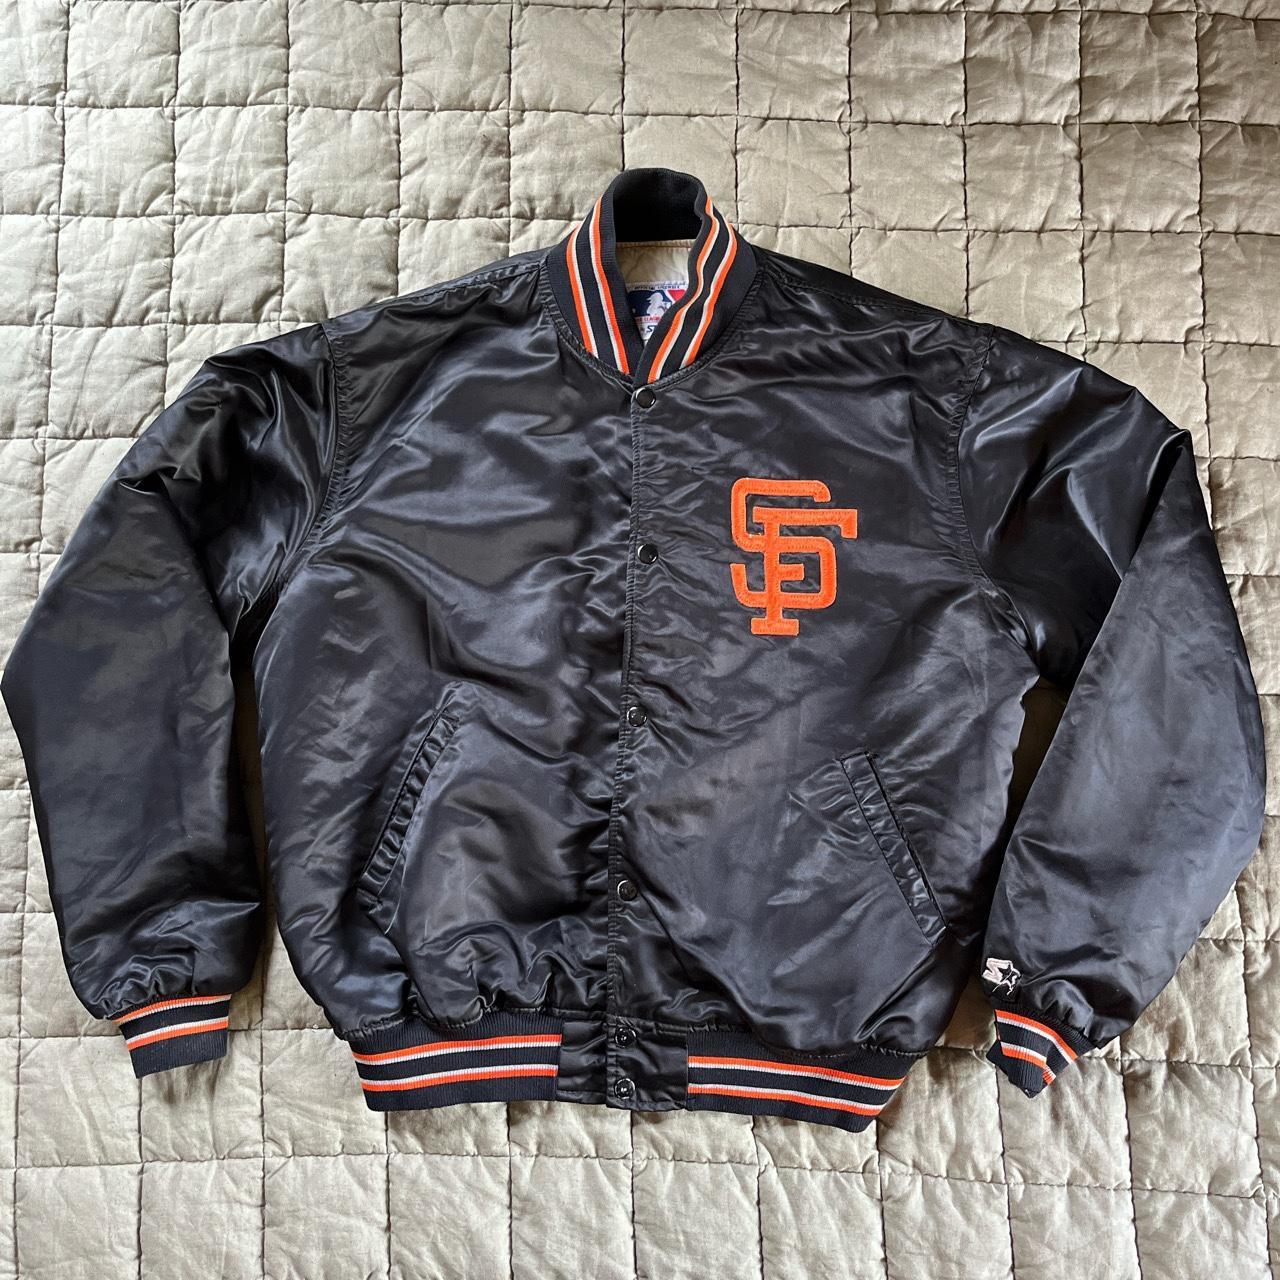 Vintage SF Giants Starter Jacket - Size XL but fits - Depop